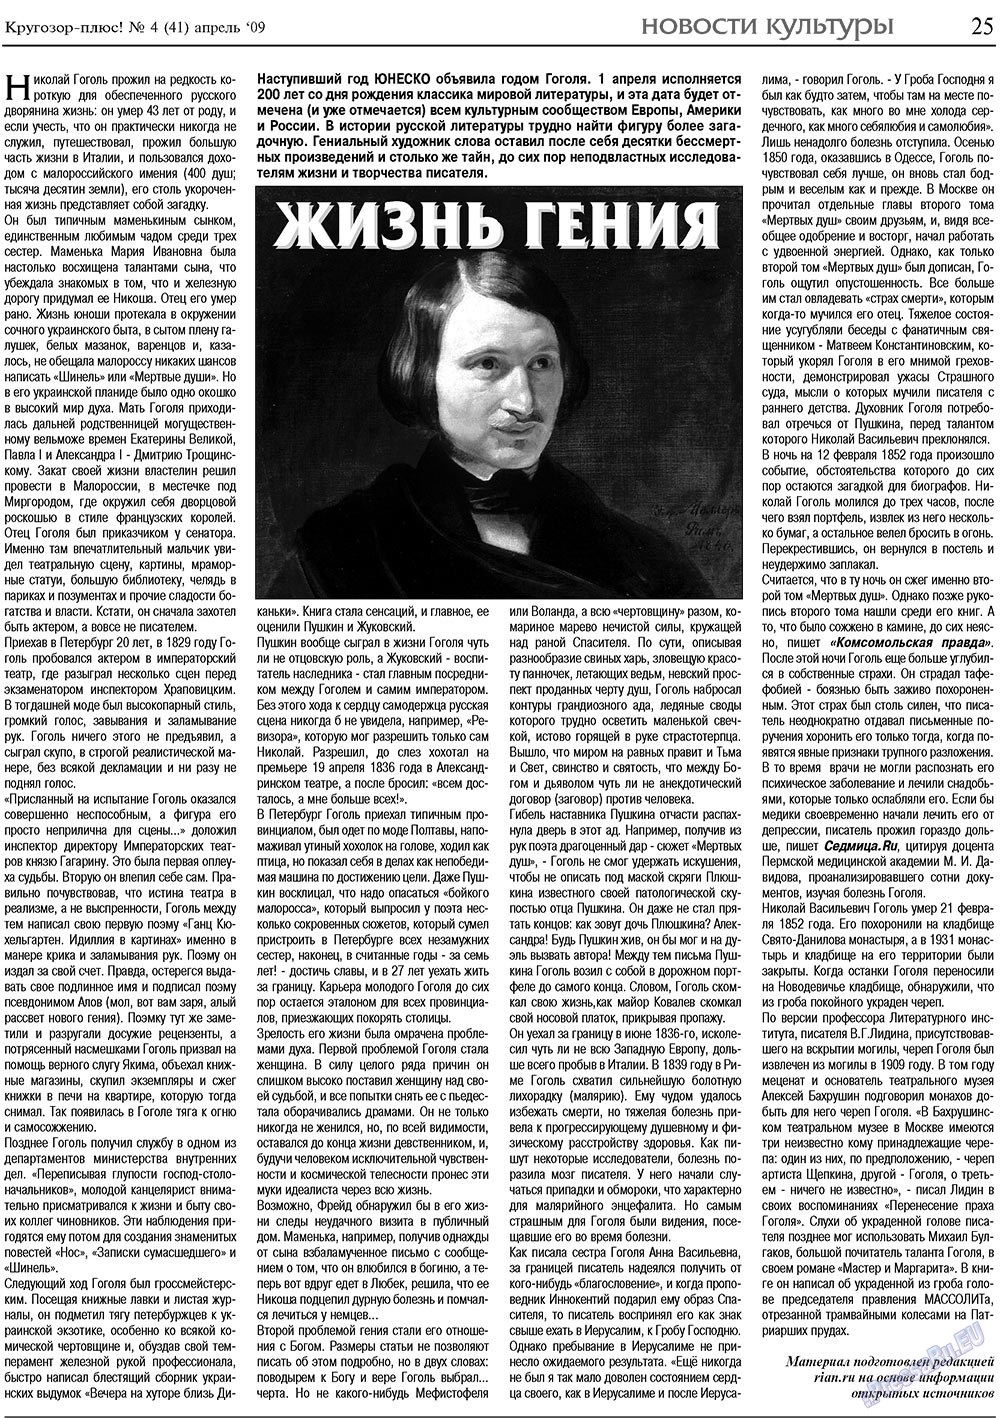 Кругозор плюс!, газета. 2009 №4 стр.25